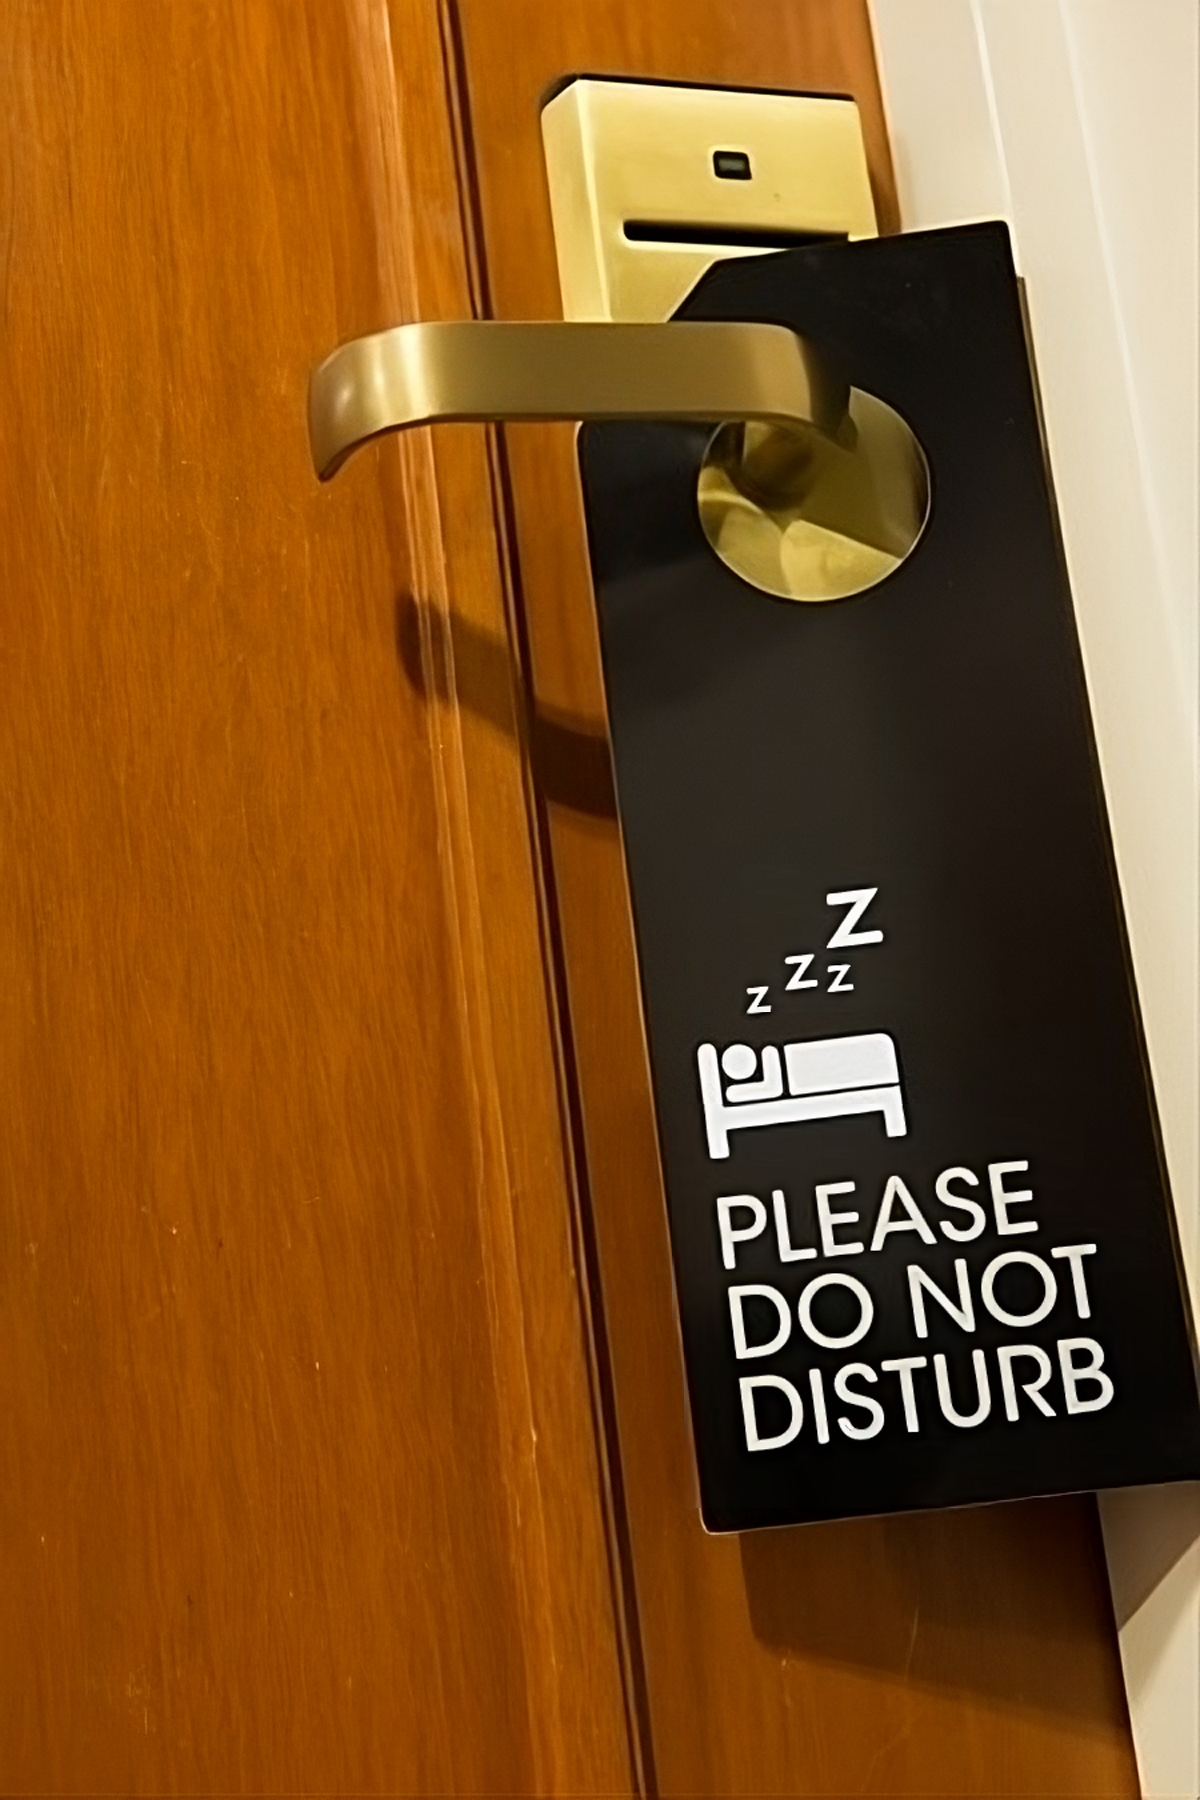 Security Breach: Simple Hack Unlocks Millions of Hotel Room Doors Globally